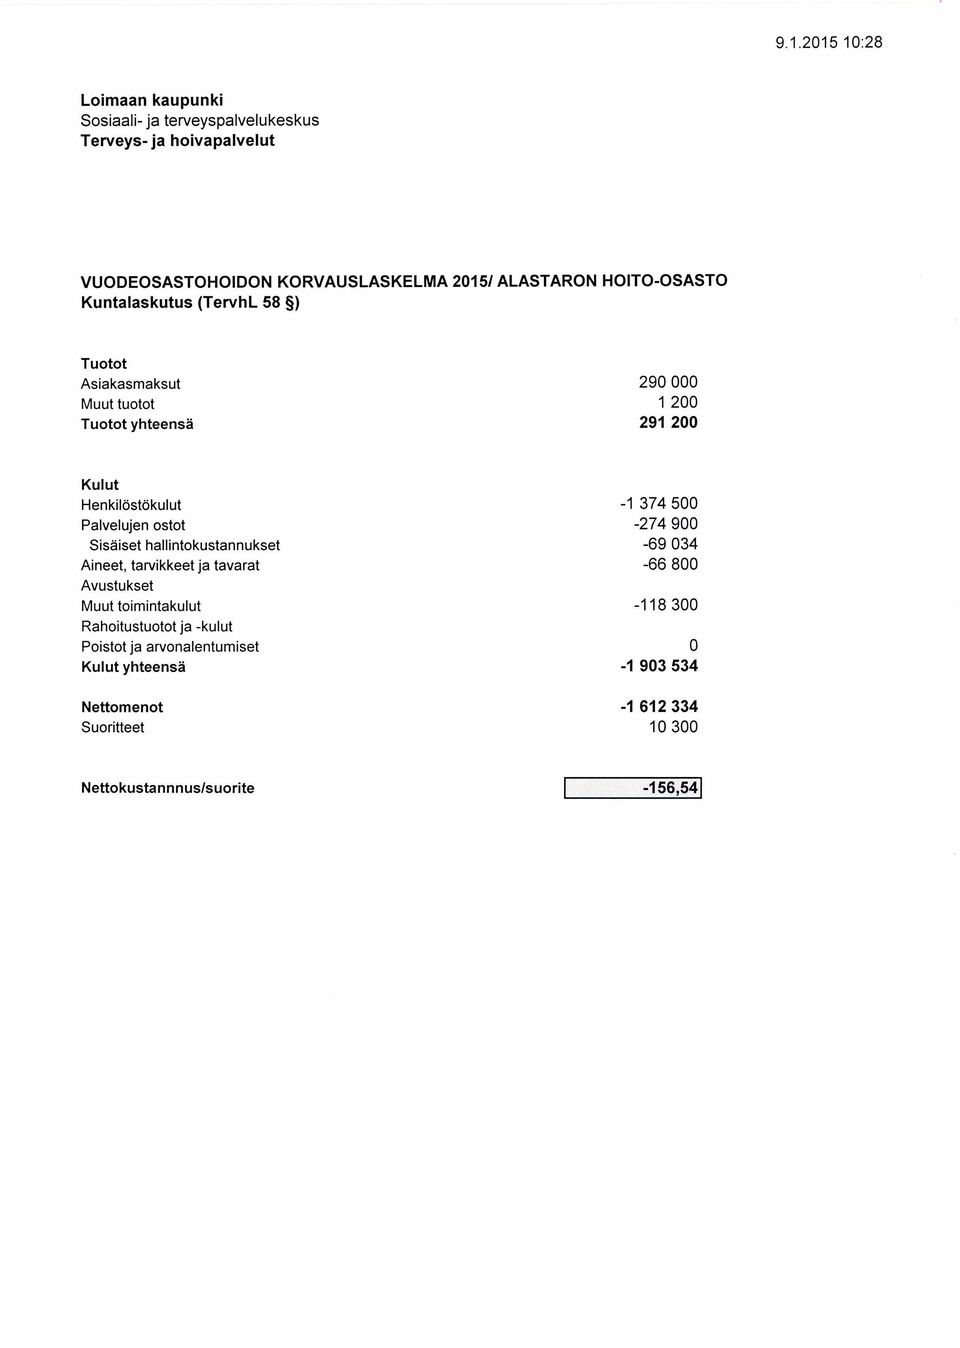 Sisäiset hallintokustannukset Aineet, tarvikkeet ja tavarat Muut toimintakulut yhteensä -1 374